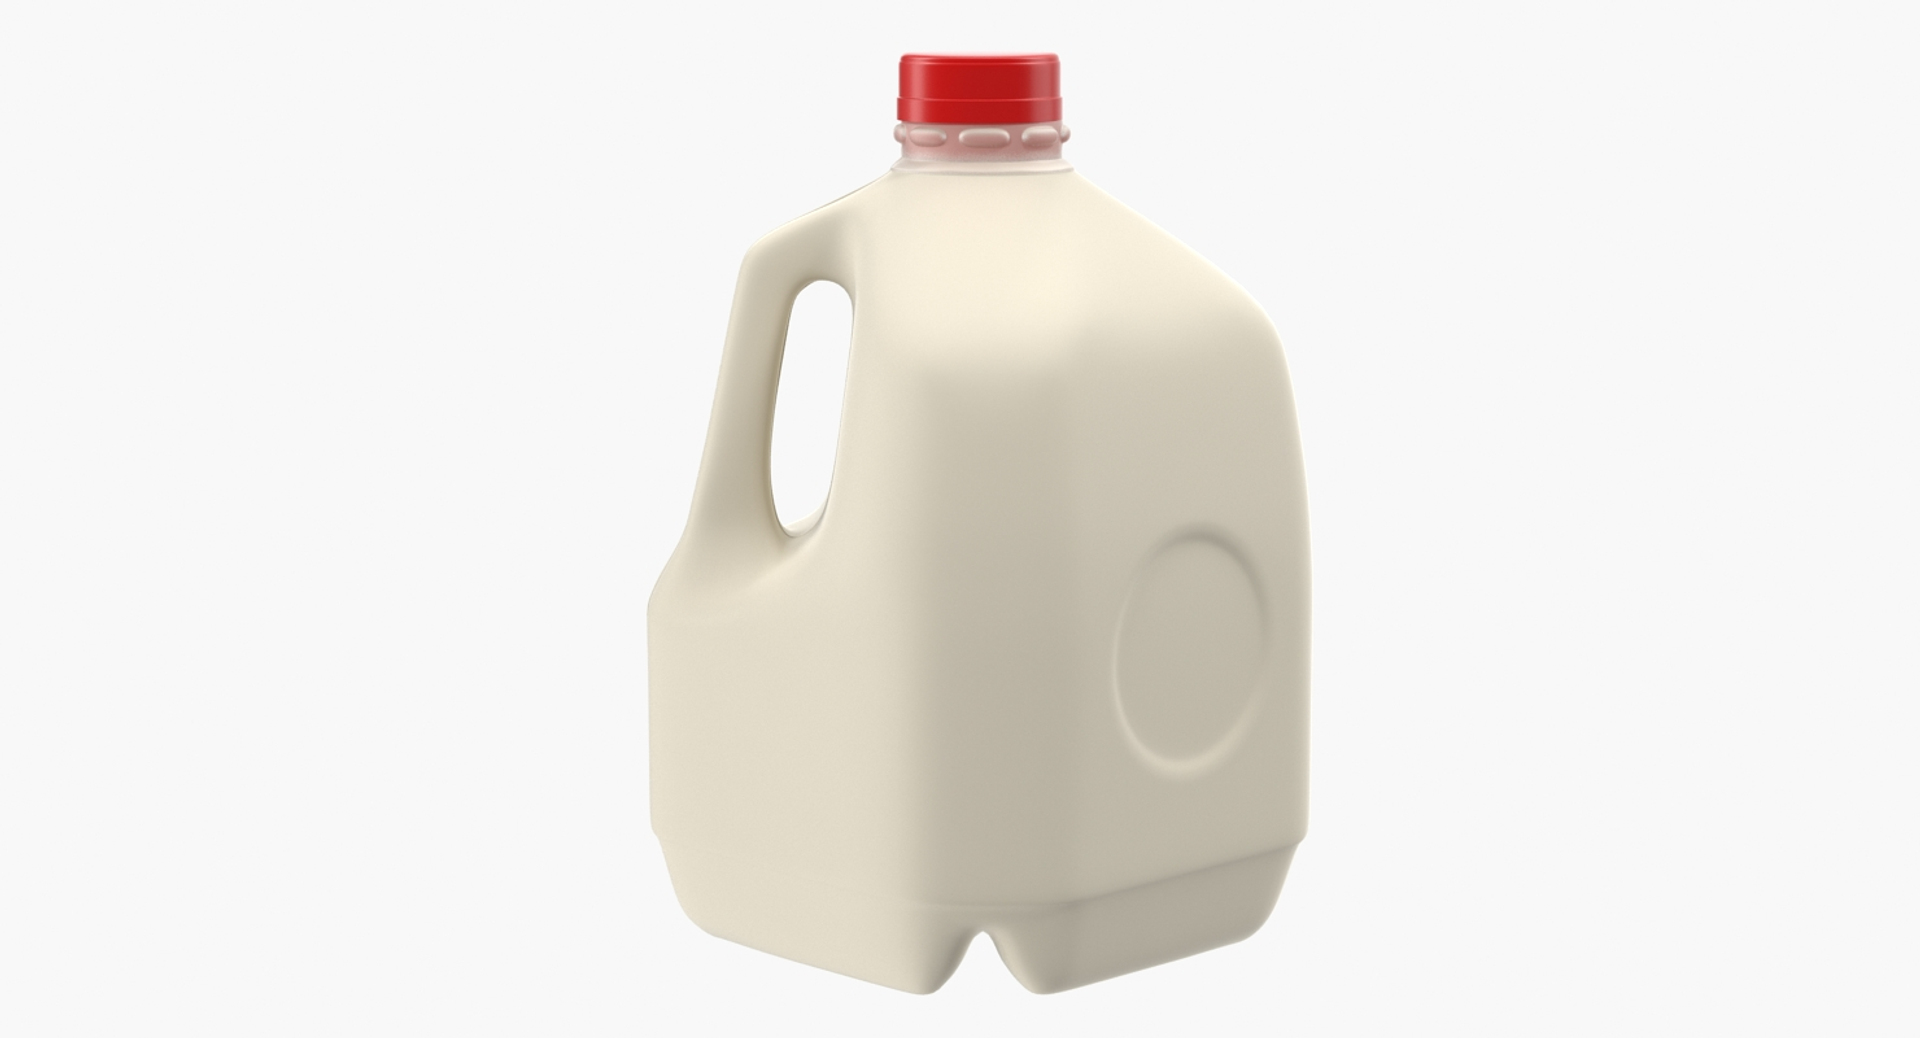 https://p.turbosquid.com/ts-thumb/Ao/aKdNP0/w8pH6IxP/plastic_milk_bottle_generic_360/jpg/1476252418/1920x1080/turn_fit_q99/620af33483a7c209e2ca21dc4a3a4f4cda8c5566/plastic_milk_bottle_generic_360-1.jpg